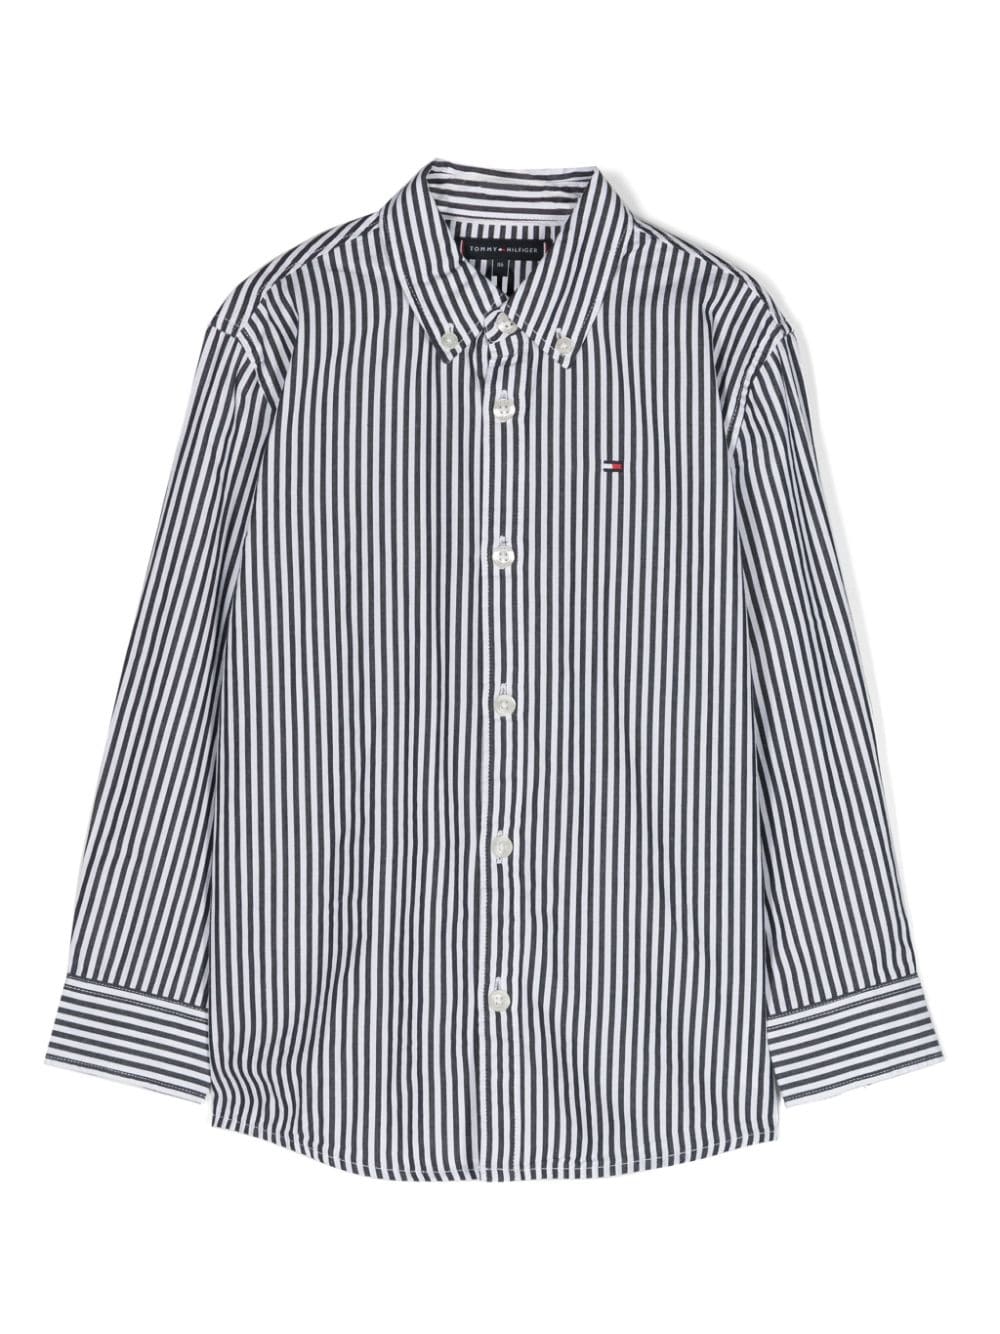 Tommy Hilfiger Junior Kids' Striped Cotton Shirt In White